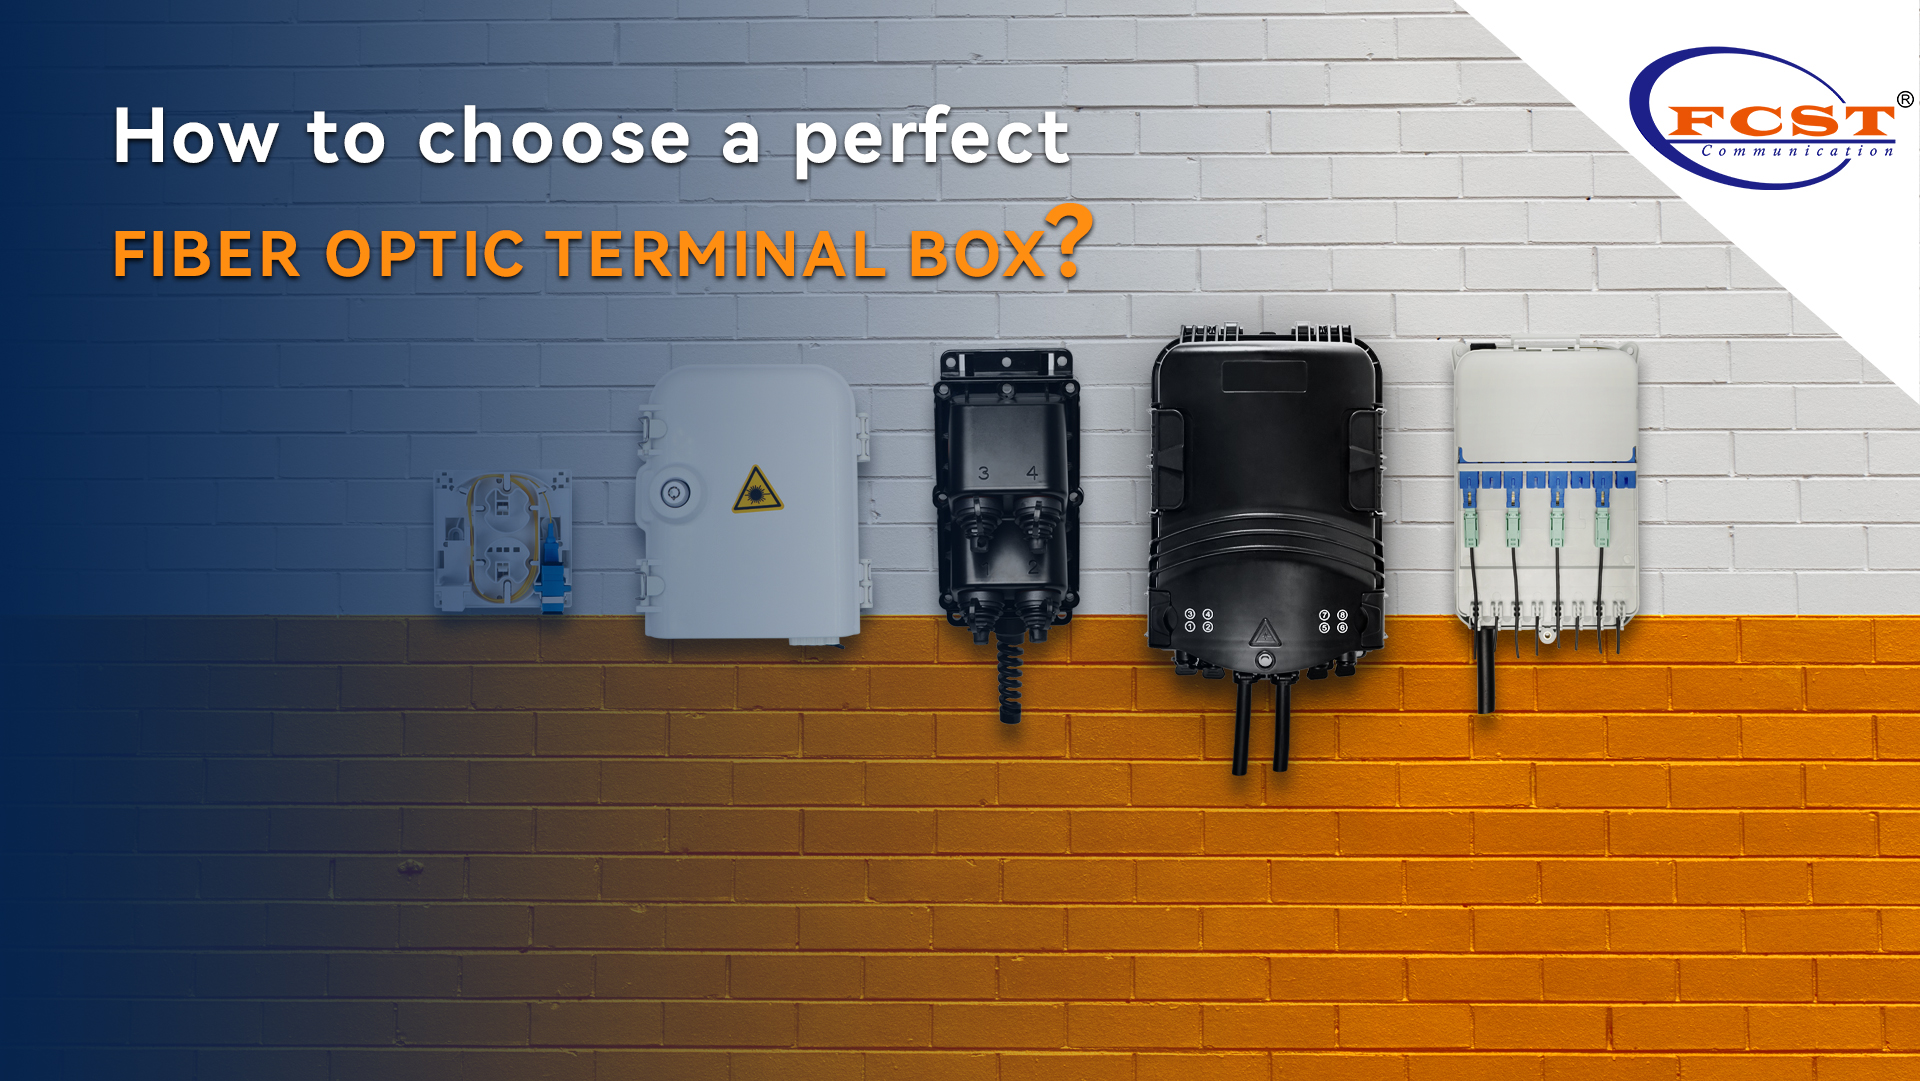 ¿Cómo elegir una caja de terminal de fibra óptica perfecta?